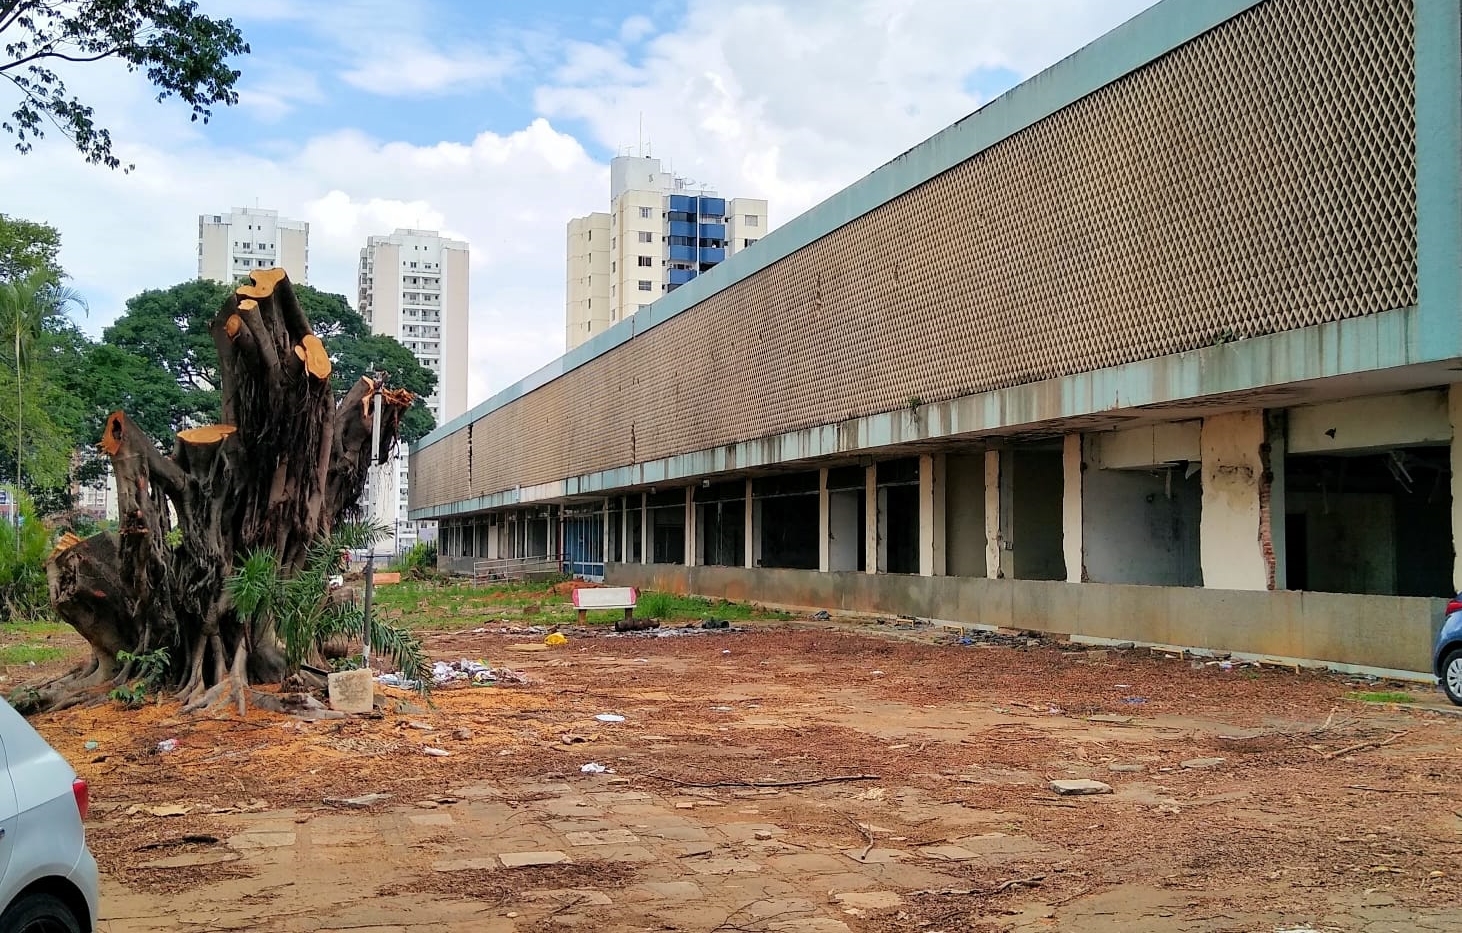 Goiânia: CAU/GO repudia demolição do edifício da Celg no Setor Oeste